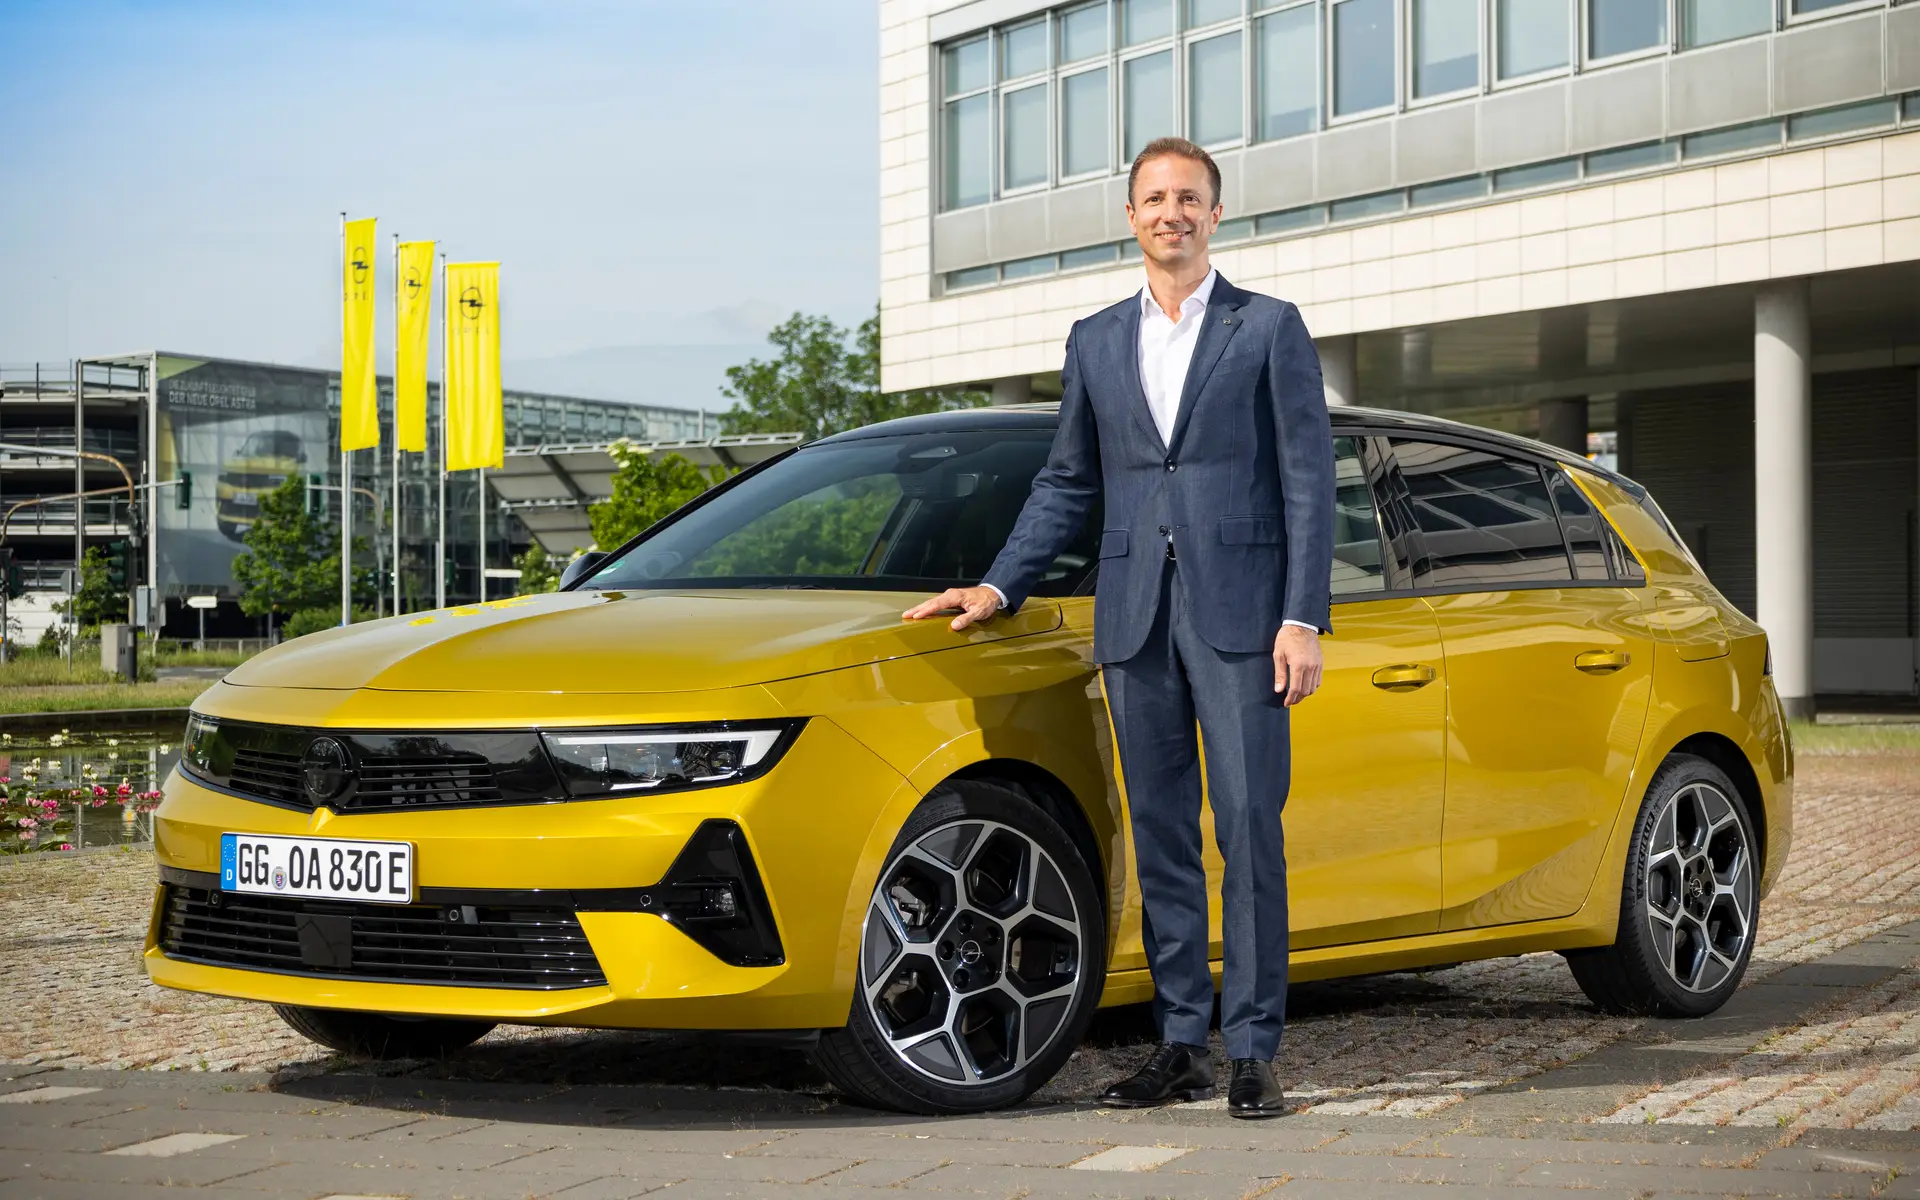 Indústria Automóvel: “Temos de nos habituar a gerir em permanente instabilidade”, diz o presidente da Opel